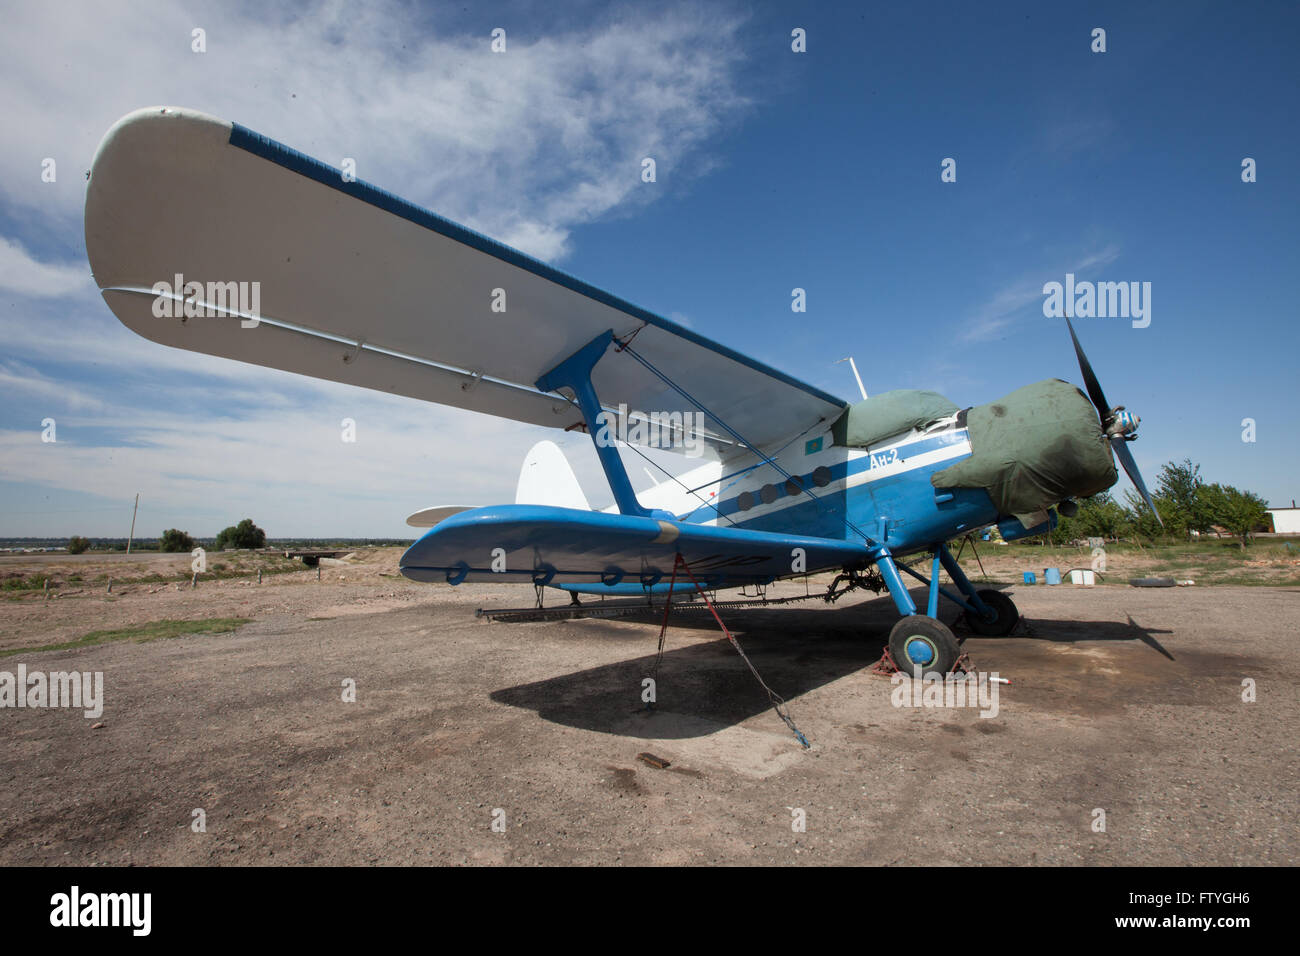 Kazakhstan, Kazakistan, Asia, landed agriculture airplane, biplane. Stock Photo